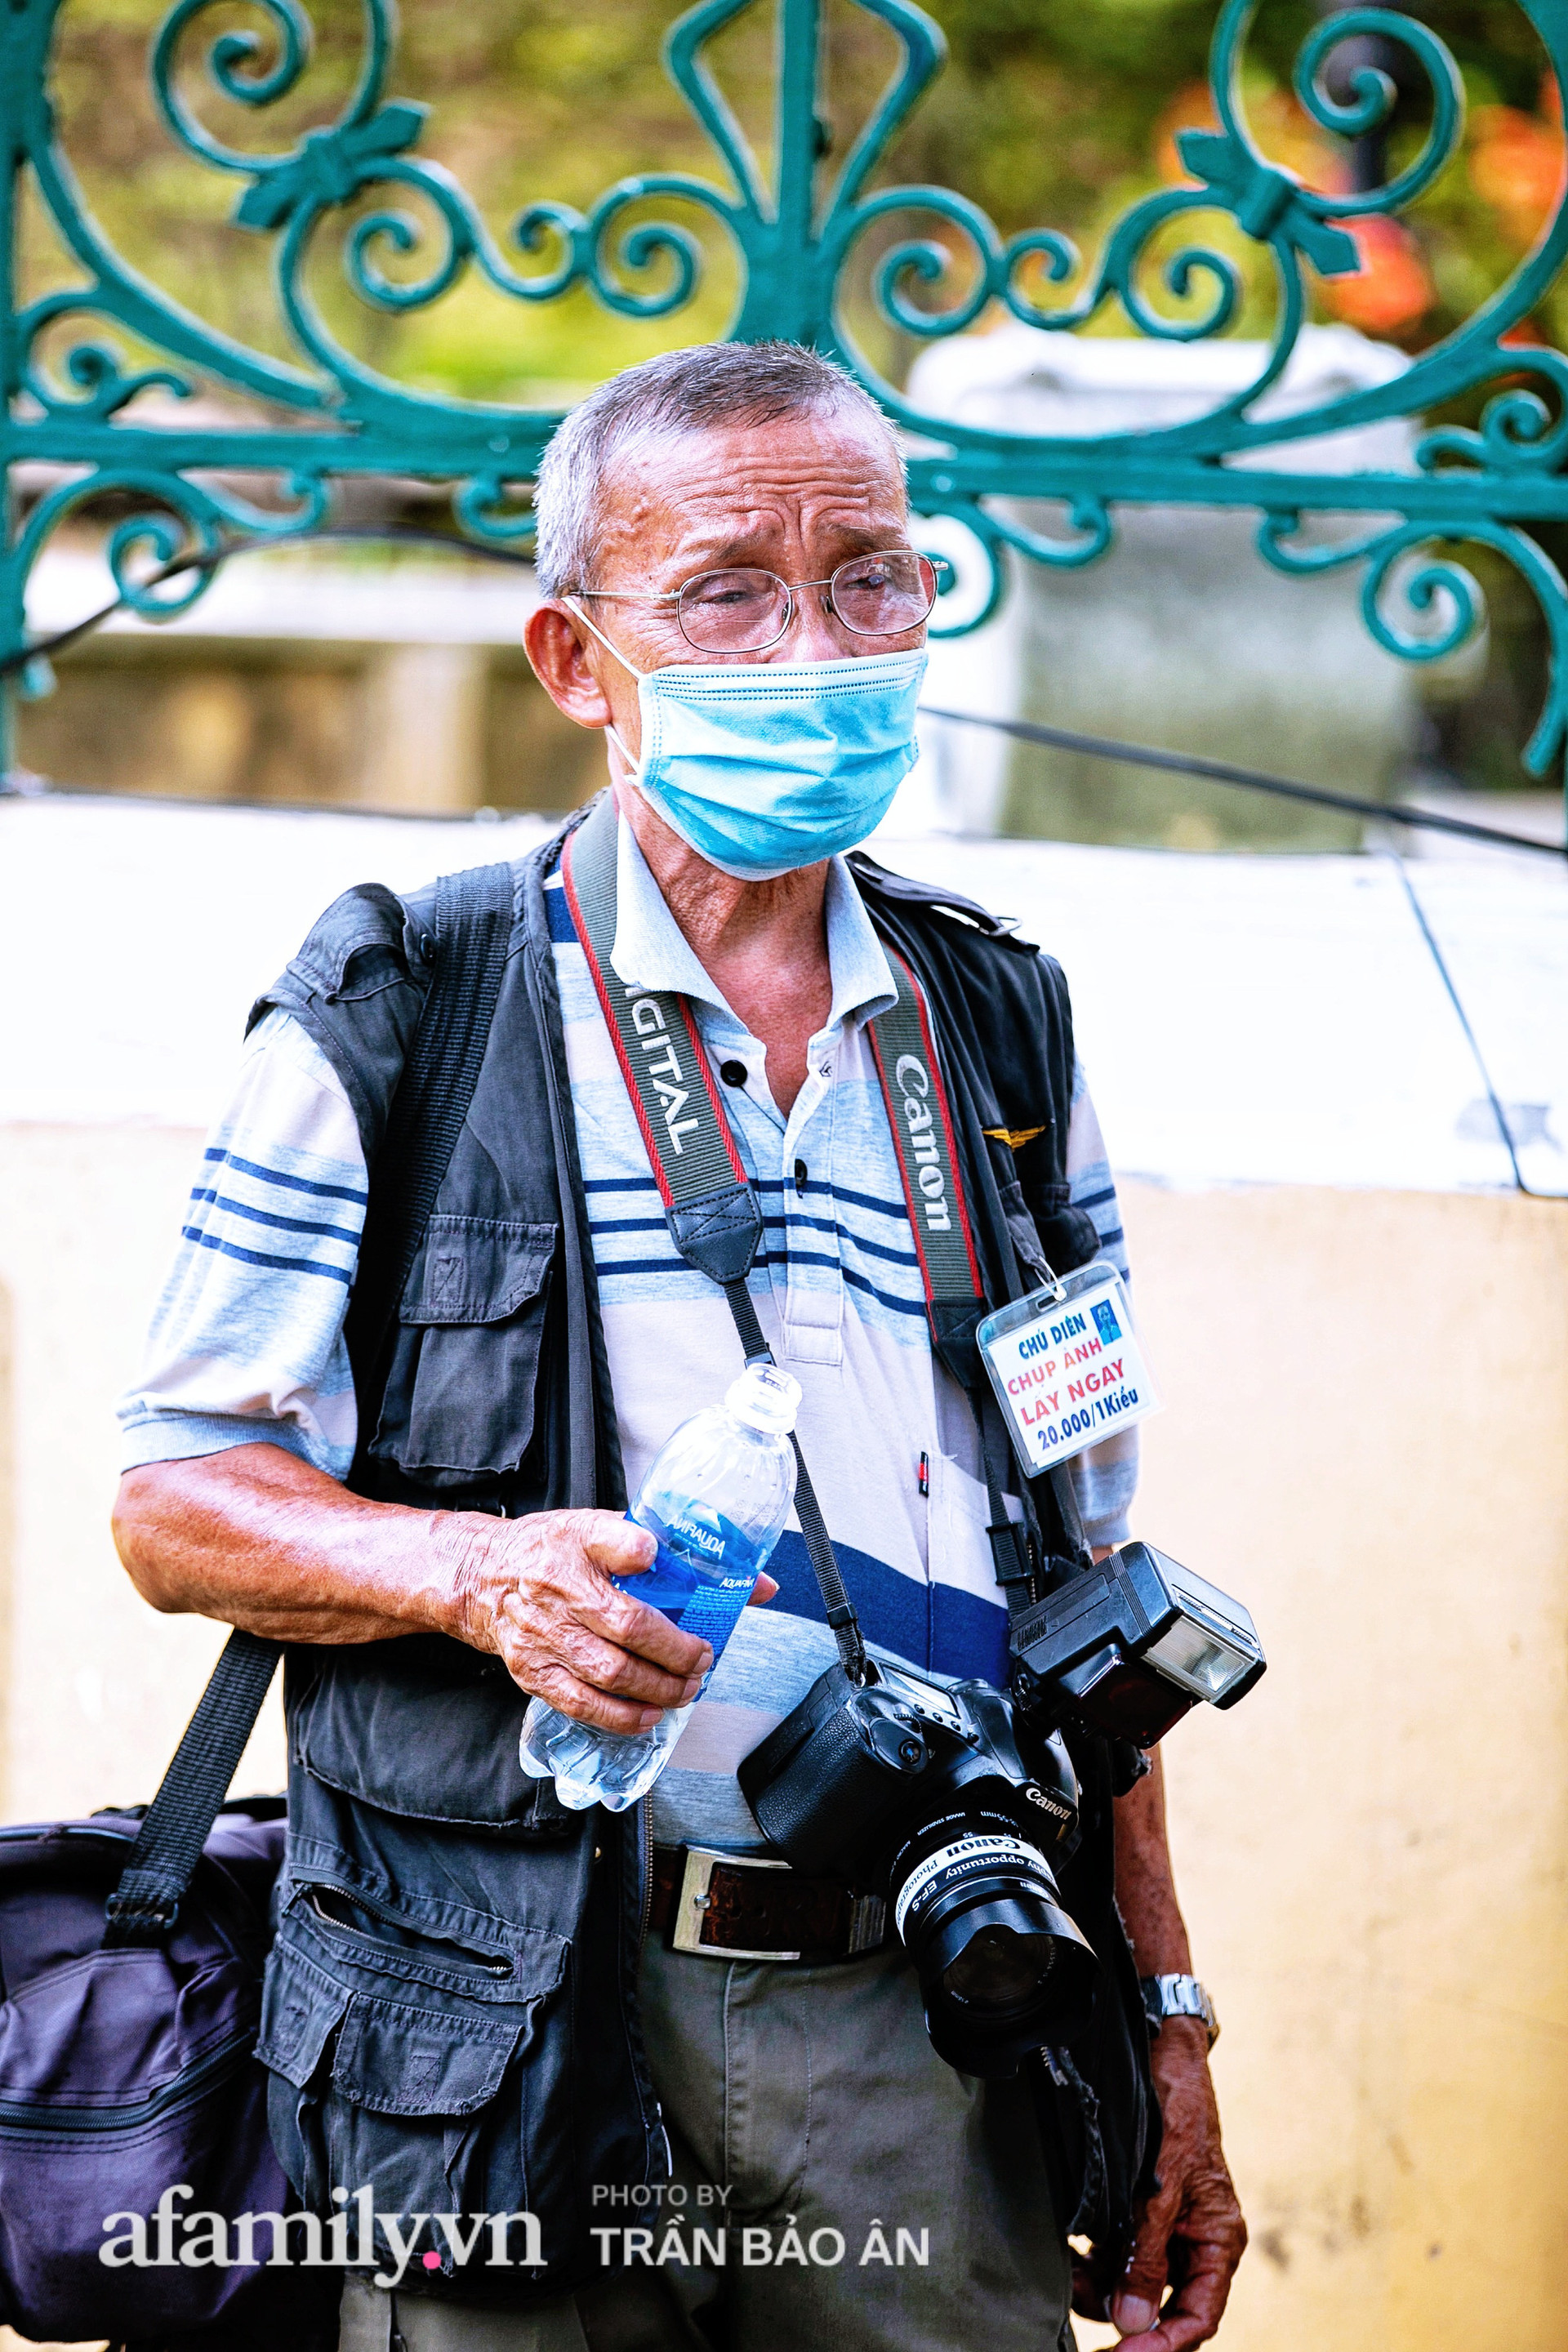  Ông thợ chụp hơn 30 năm đứng chờ ở Bưu điện TP lao đao vì Sài Gòn vào dịch, chạnh lòng 20 nghìn một bức ảnh kỳ công cũng không bằng cái nút trên điện thoại  - Ảnh 2.